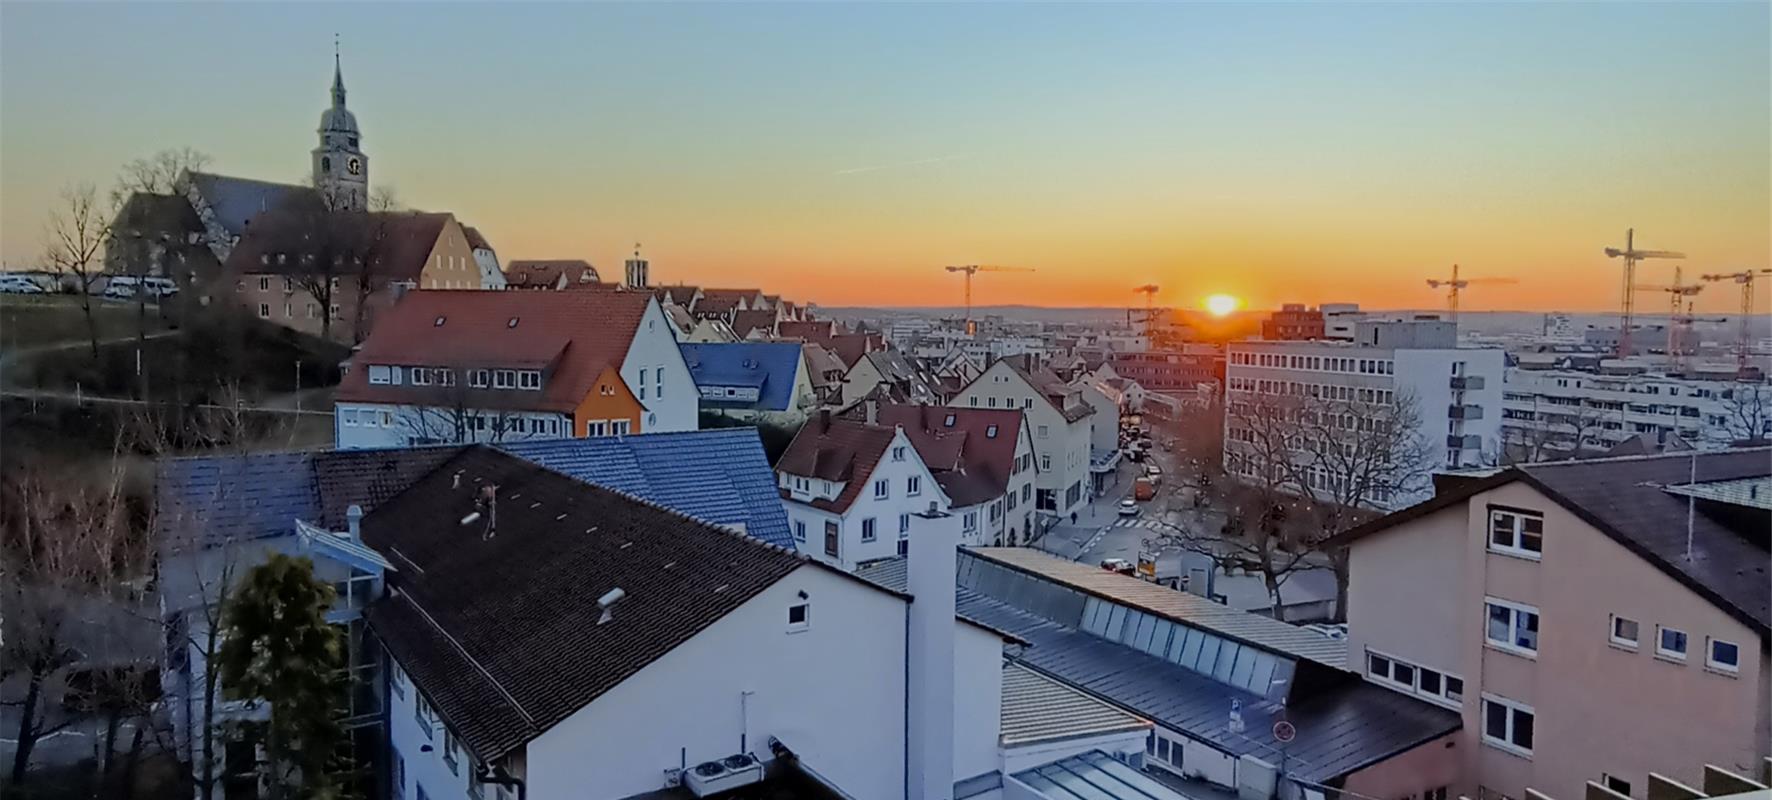 Sonnenuntergang in Böblingen am 10. März 2022. Von Jörg Spengler aus Hildrizhaus...